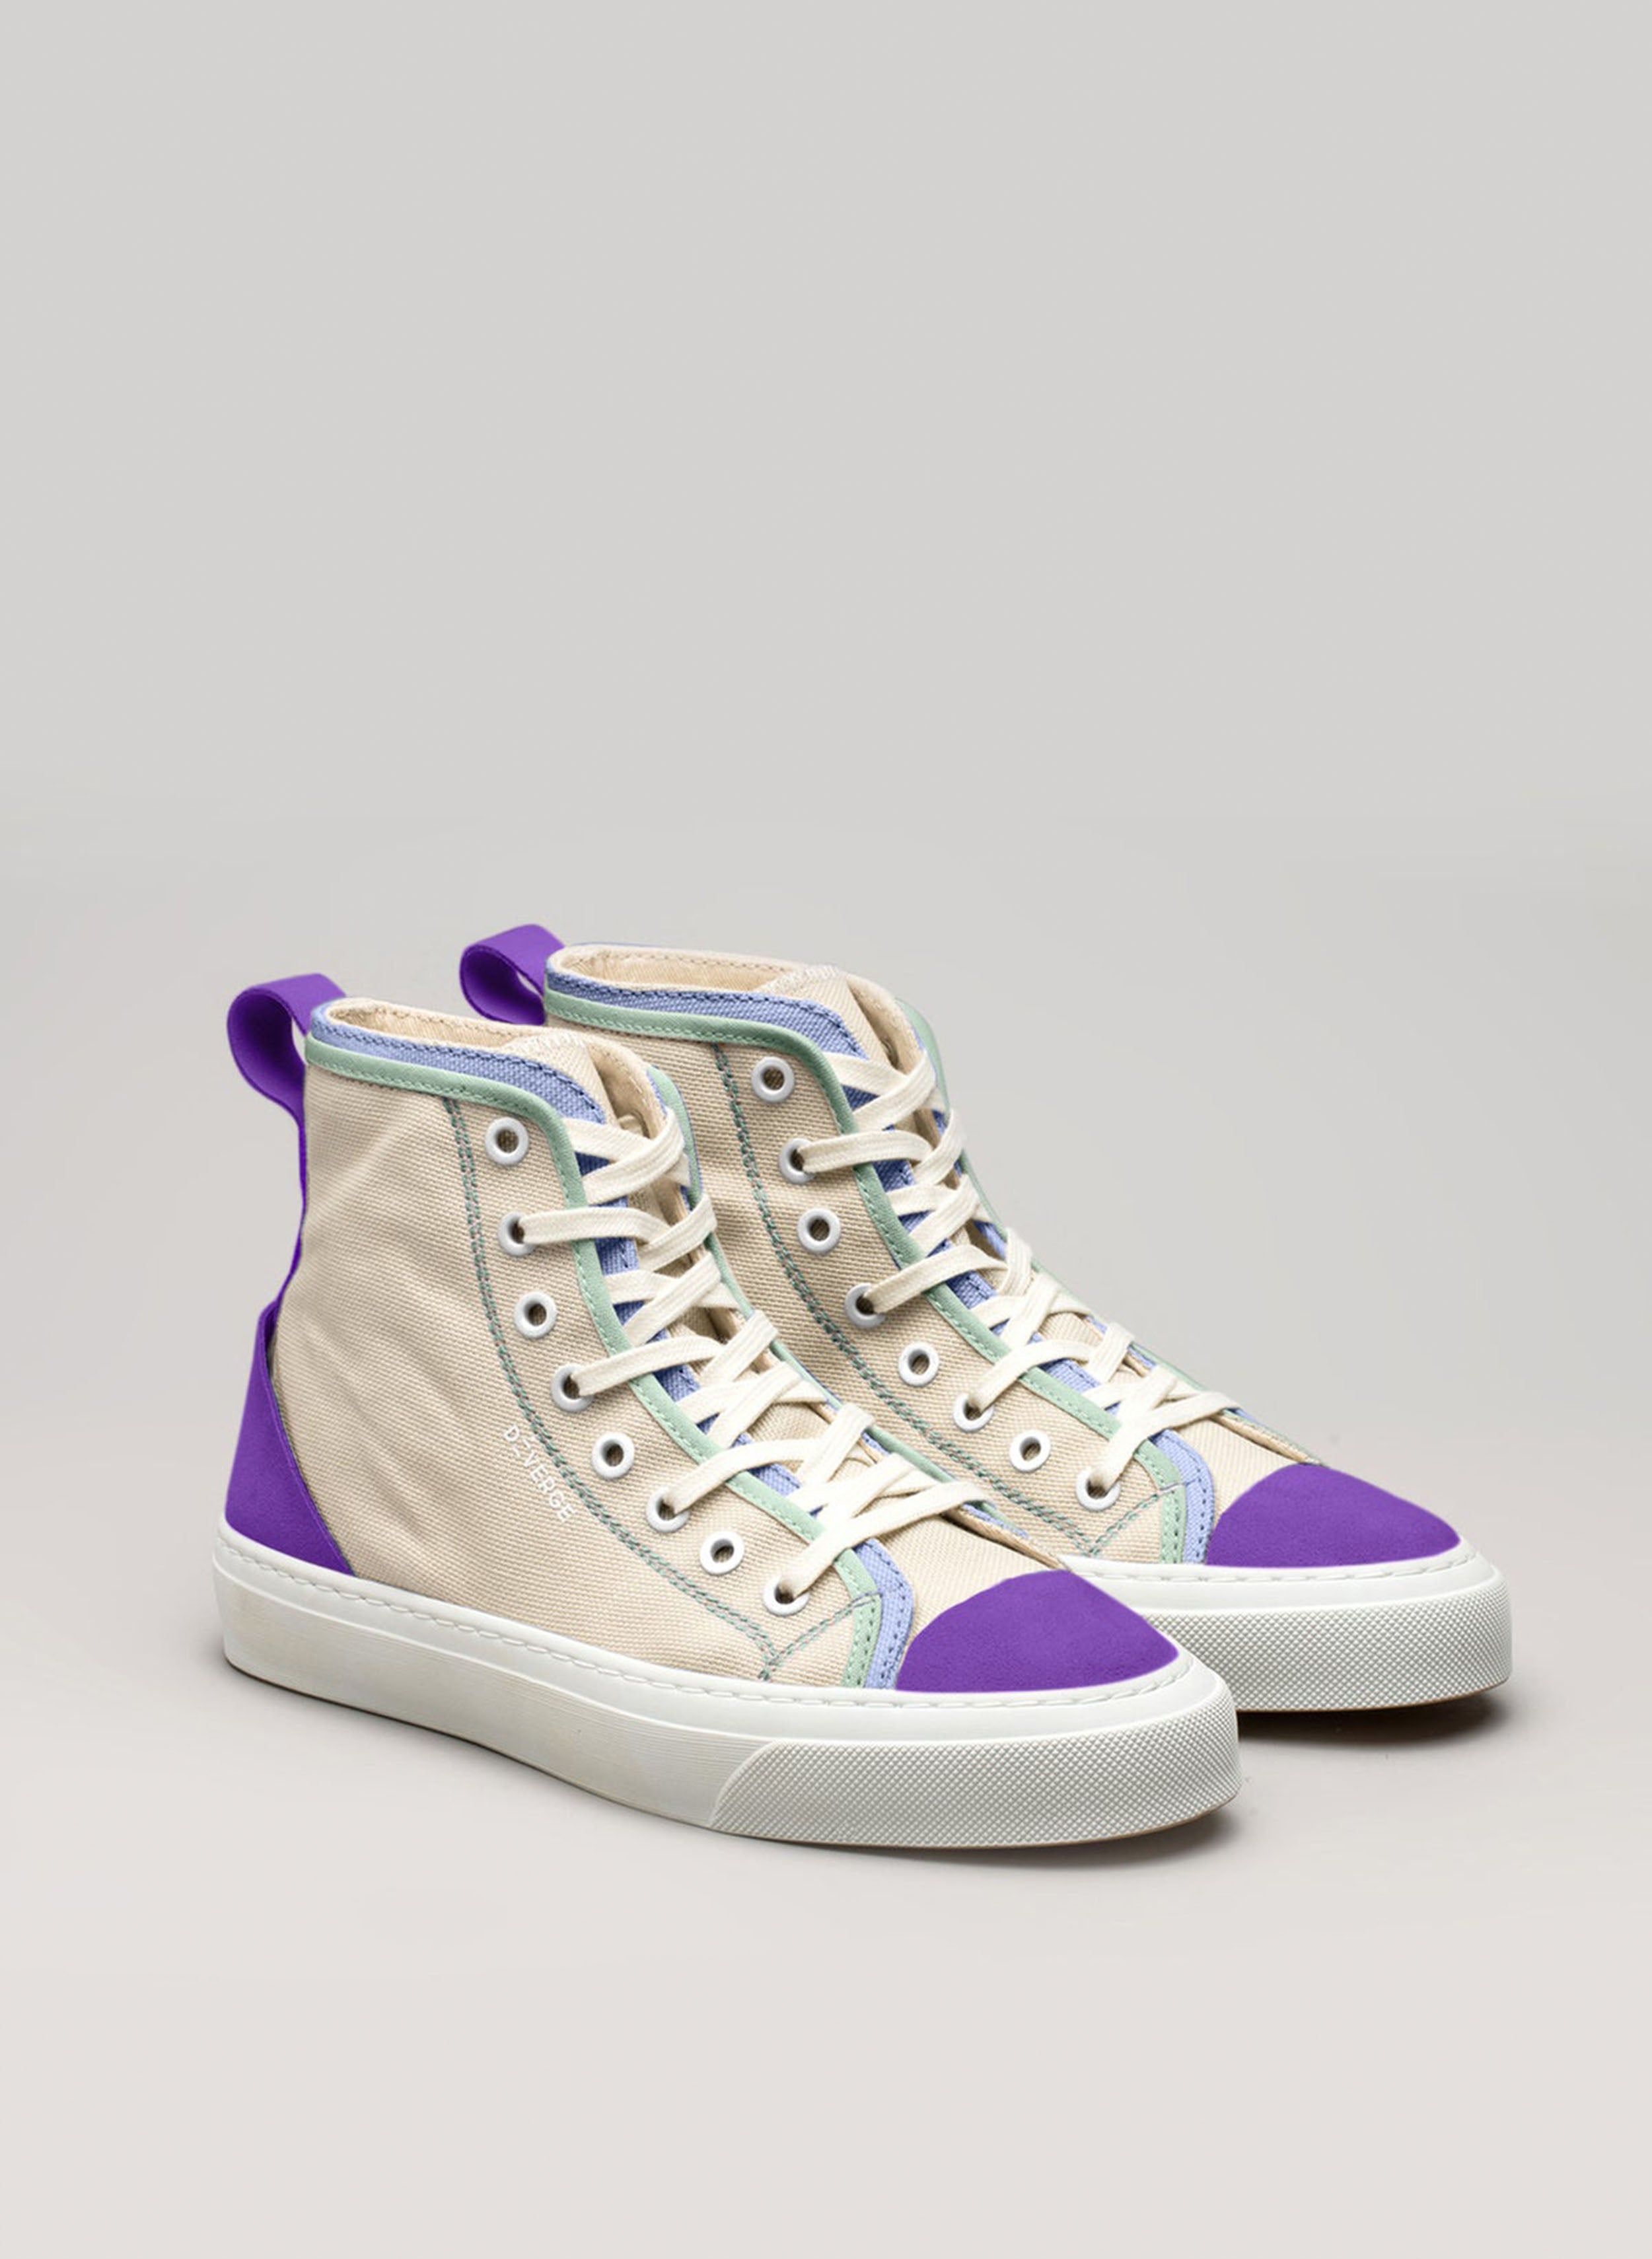 Un par de zapatillas altas personalizadas sneakers de Diverge que promueven el impacto social a través del proyecto imagine.